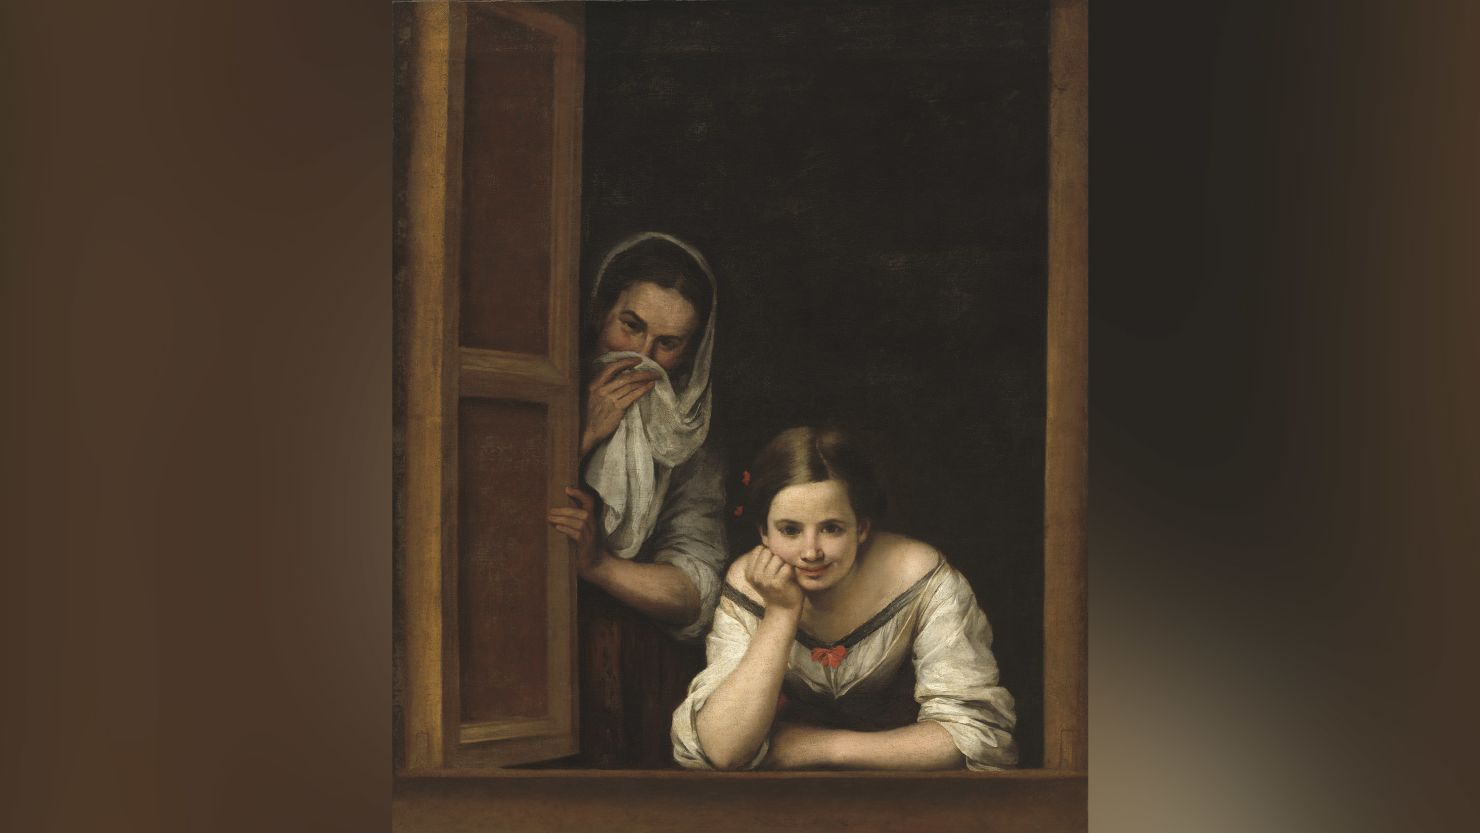 Bartolomé Esteban Murillo (1617-1682), Two Women at a Window, c. 1655/1660